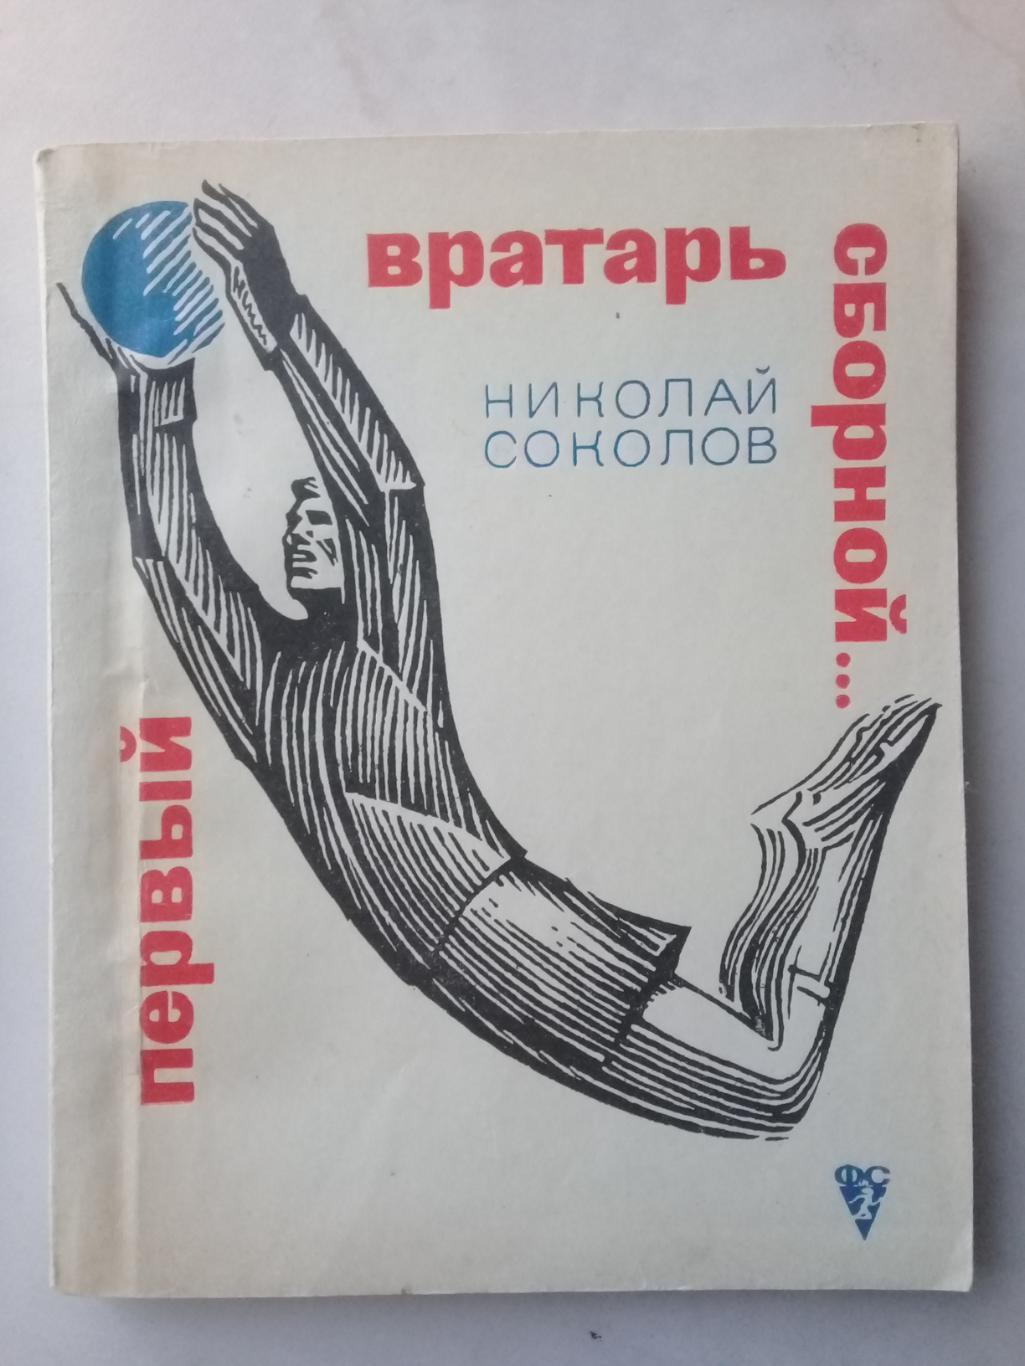 Первый вратарь сборной. Николай Соколов. 1968 год.